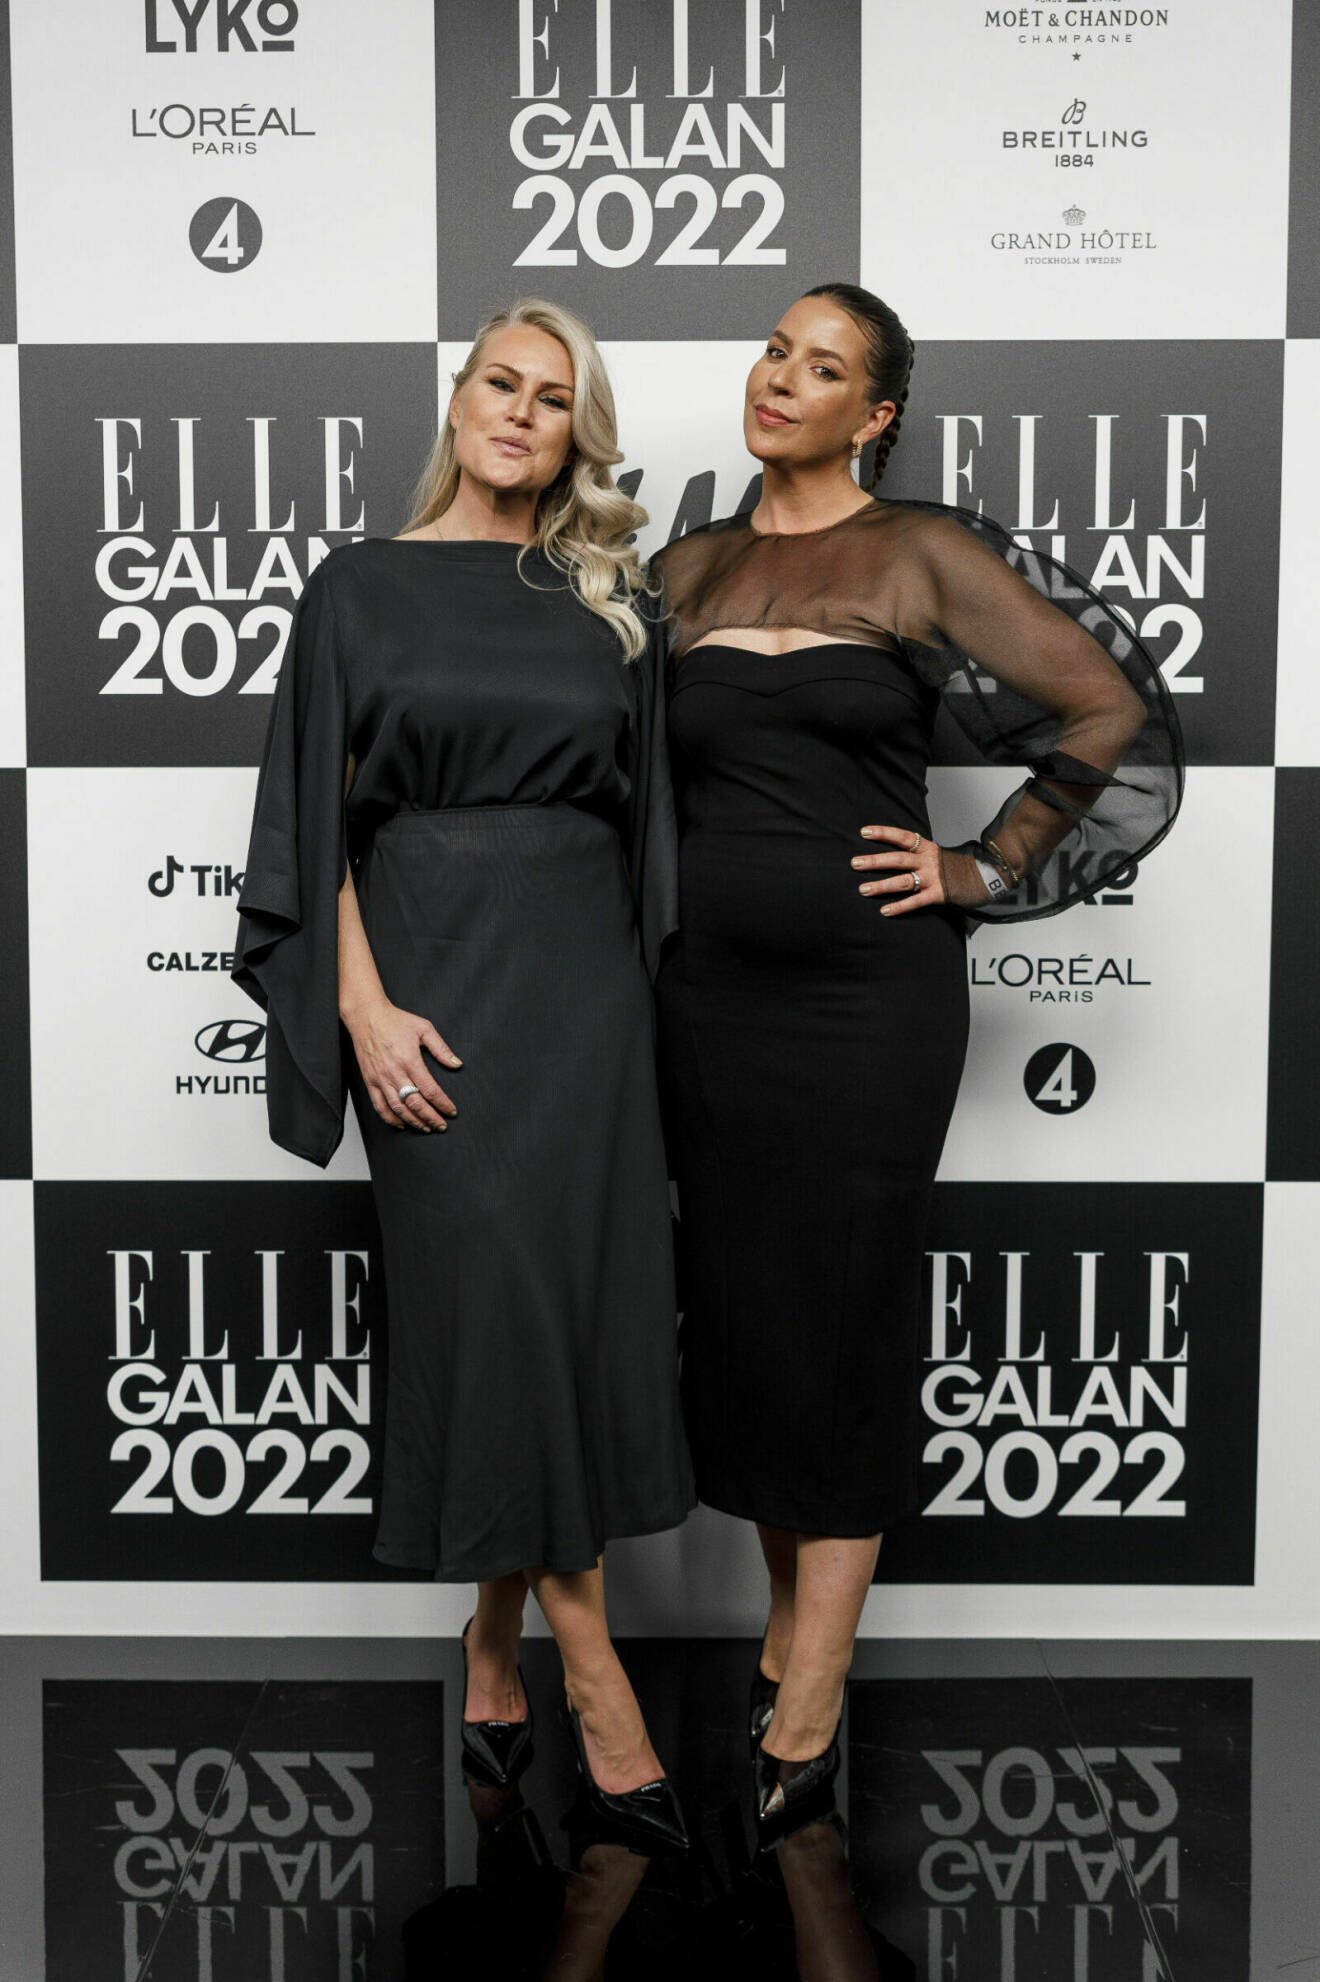 Frida Fahrman och Emma Unckel på ELLE-galan 2022.